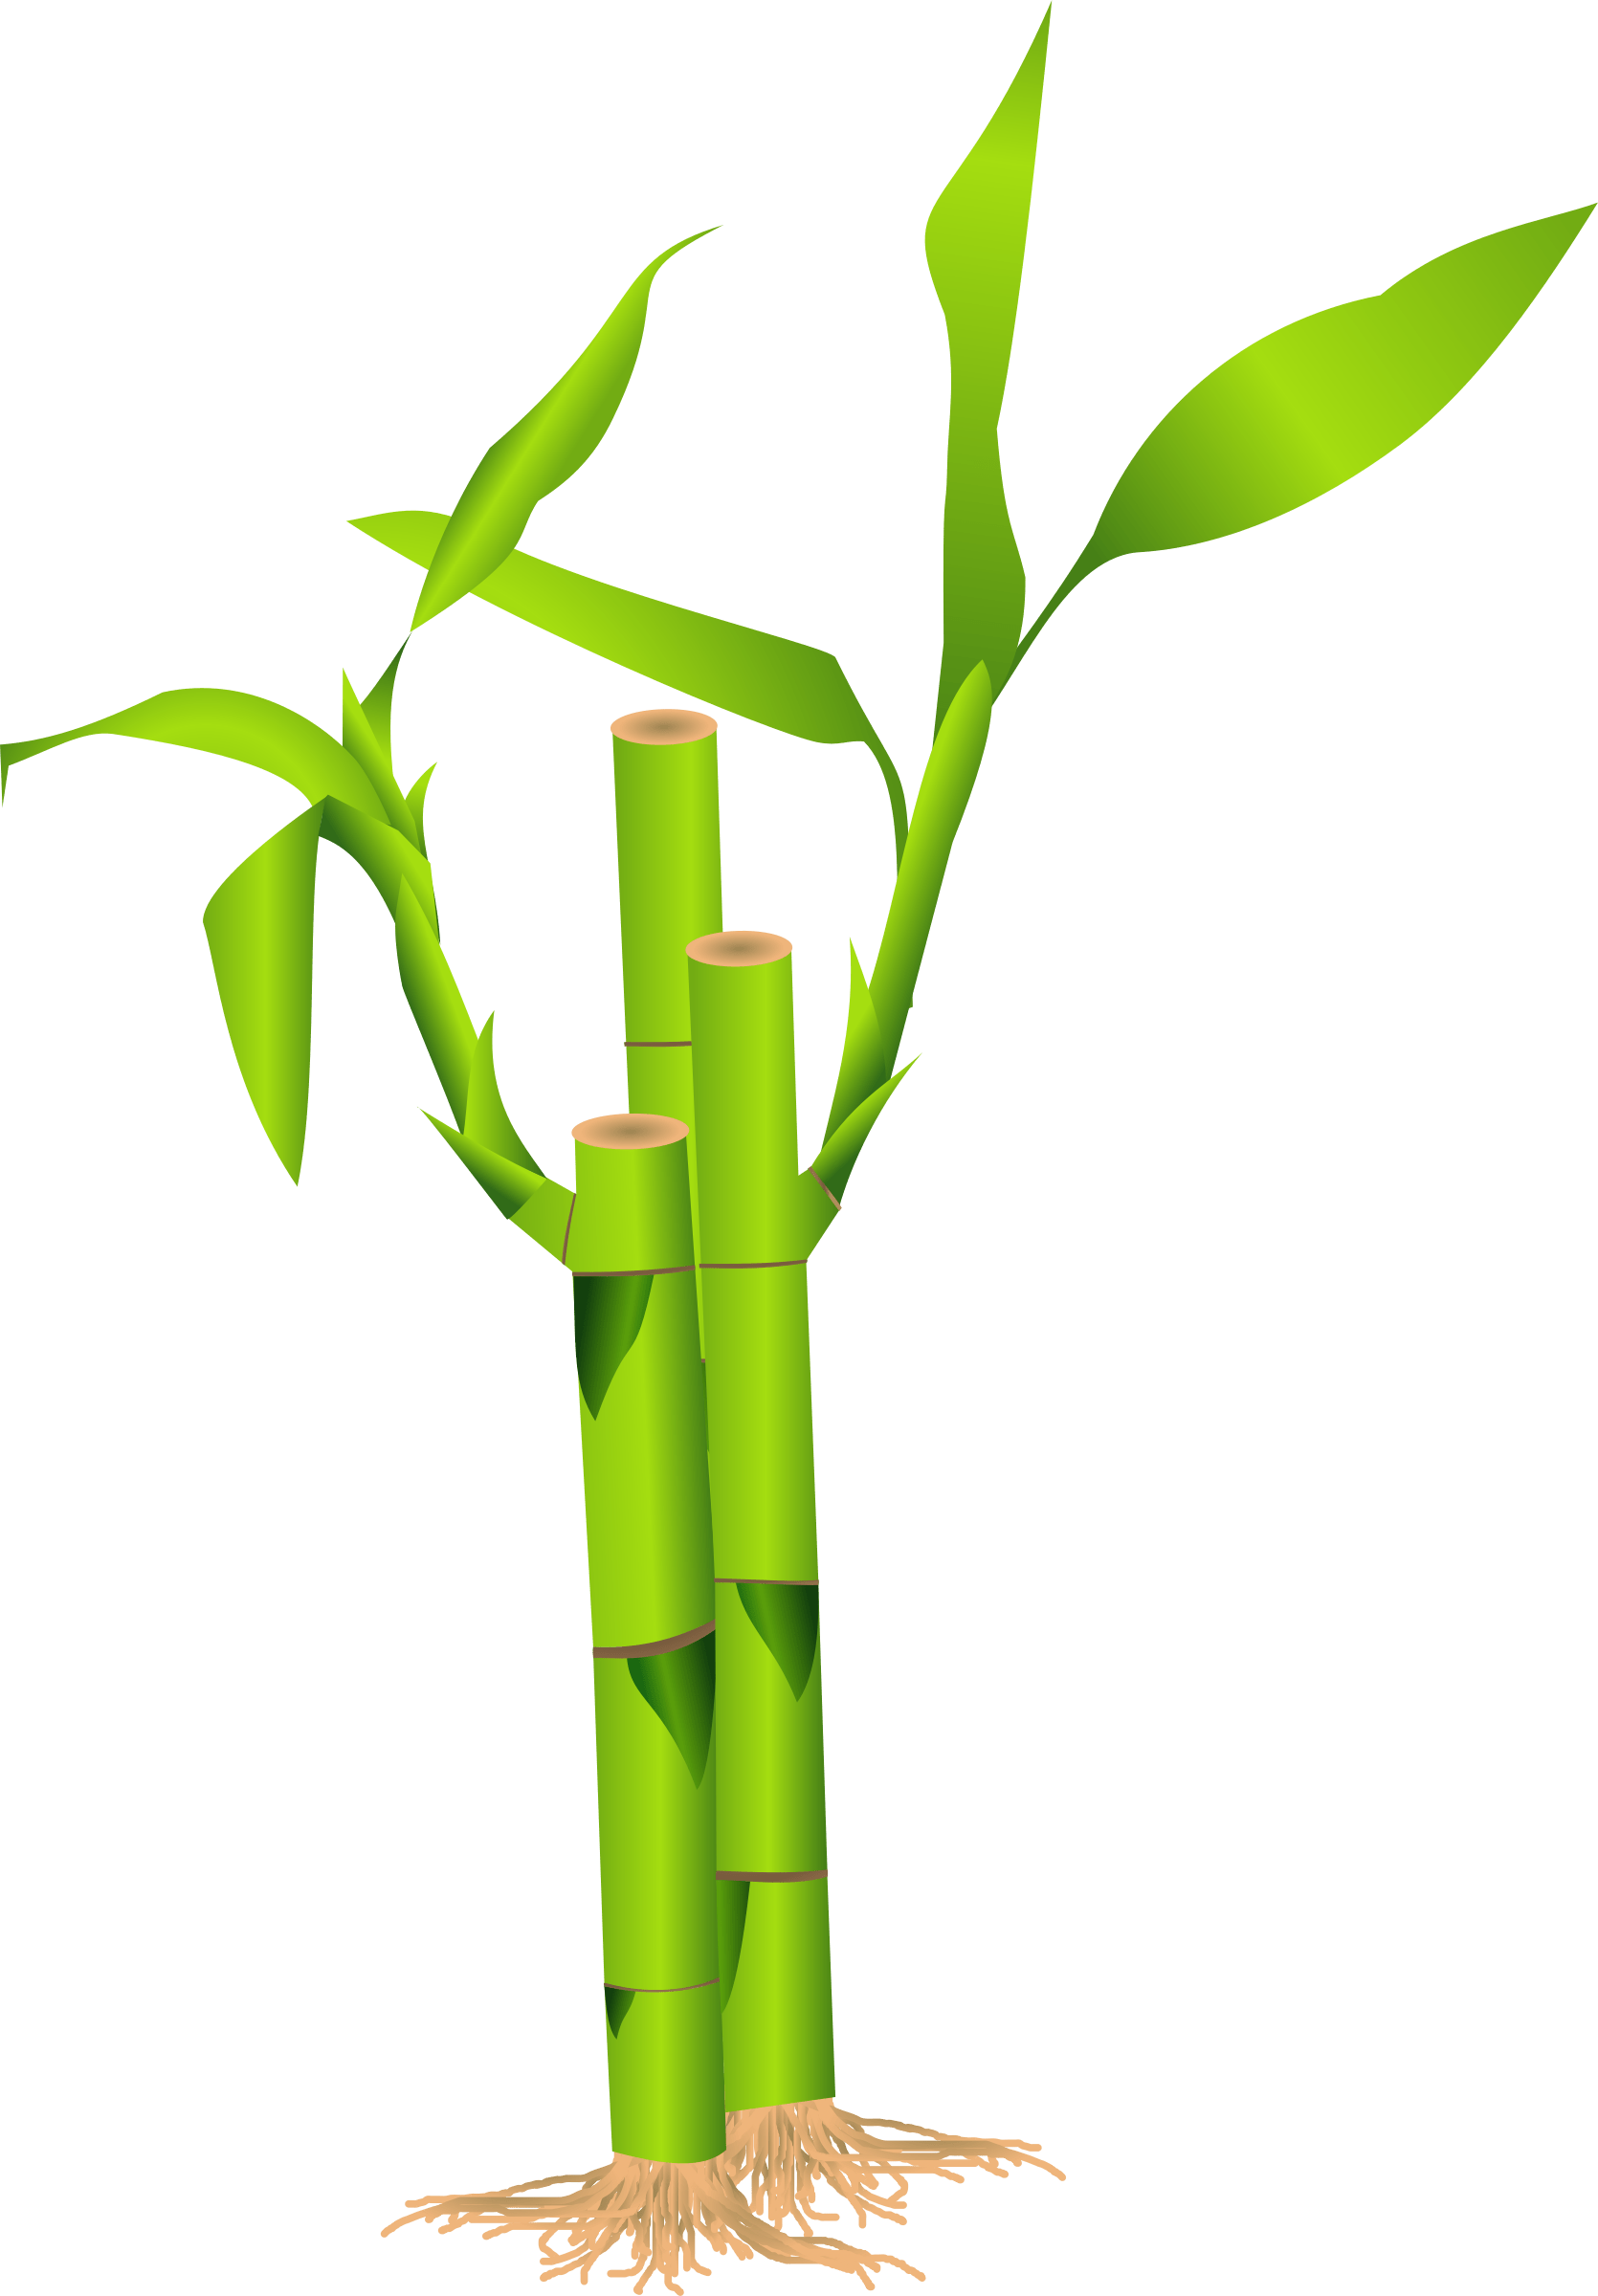 flutes clipart big bamboo